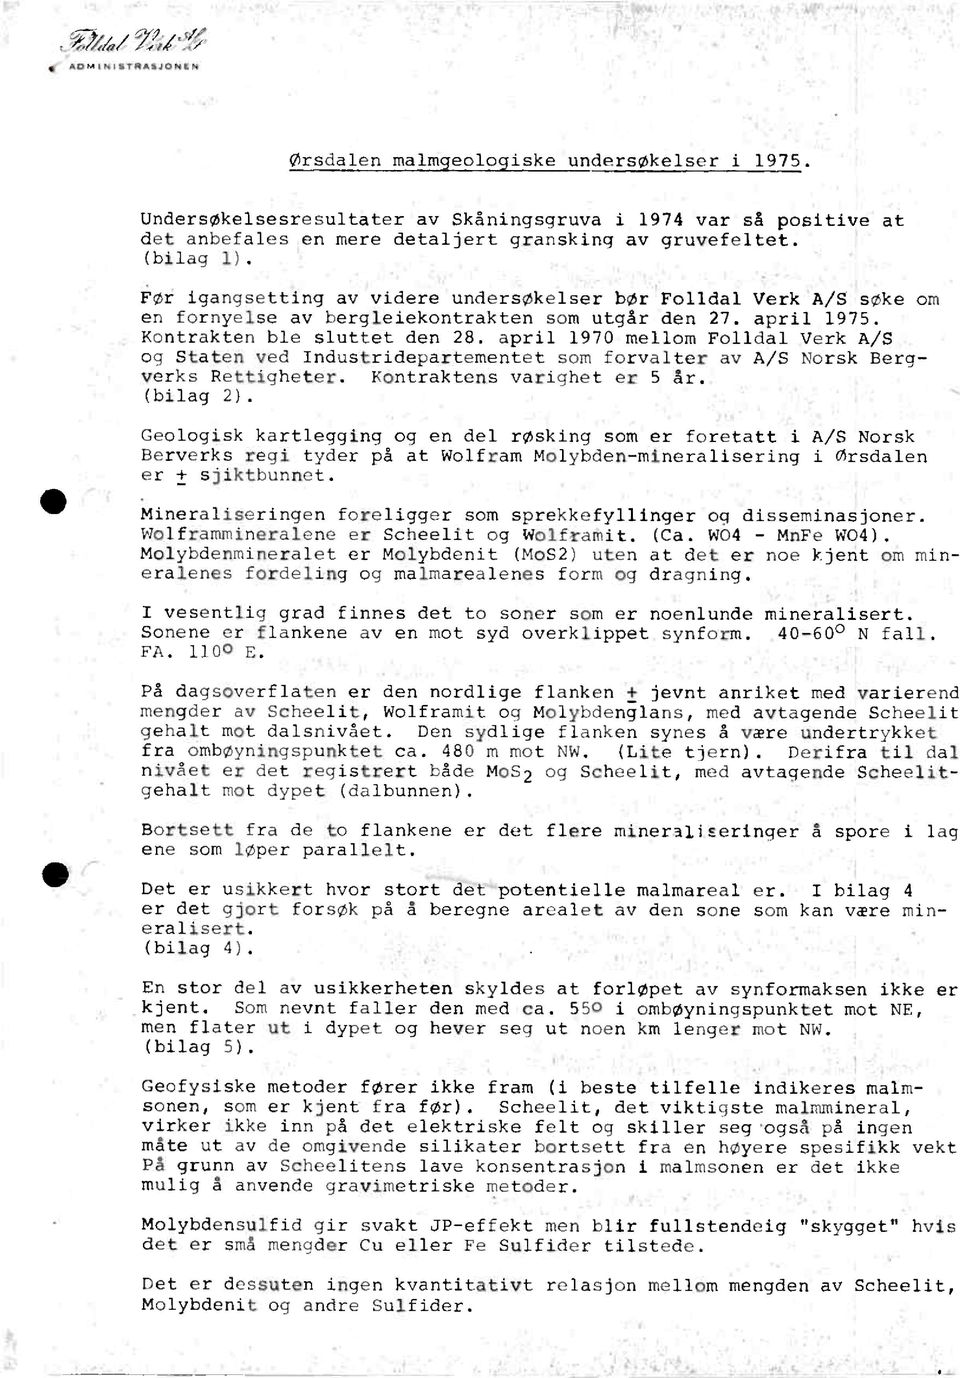 Før igangsetting av videre undersøkelser bør Folldal Verk A/S søke om en fornyelse av bergleiekontrakten som utgår den 27. april 1975. Kontrakten ble sluttet den 28.